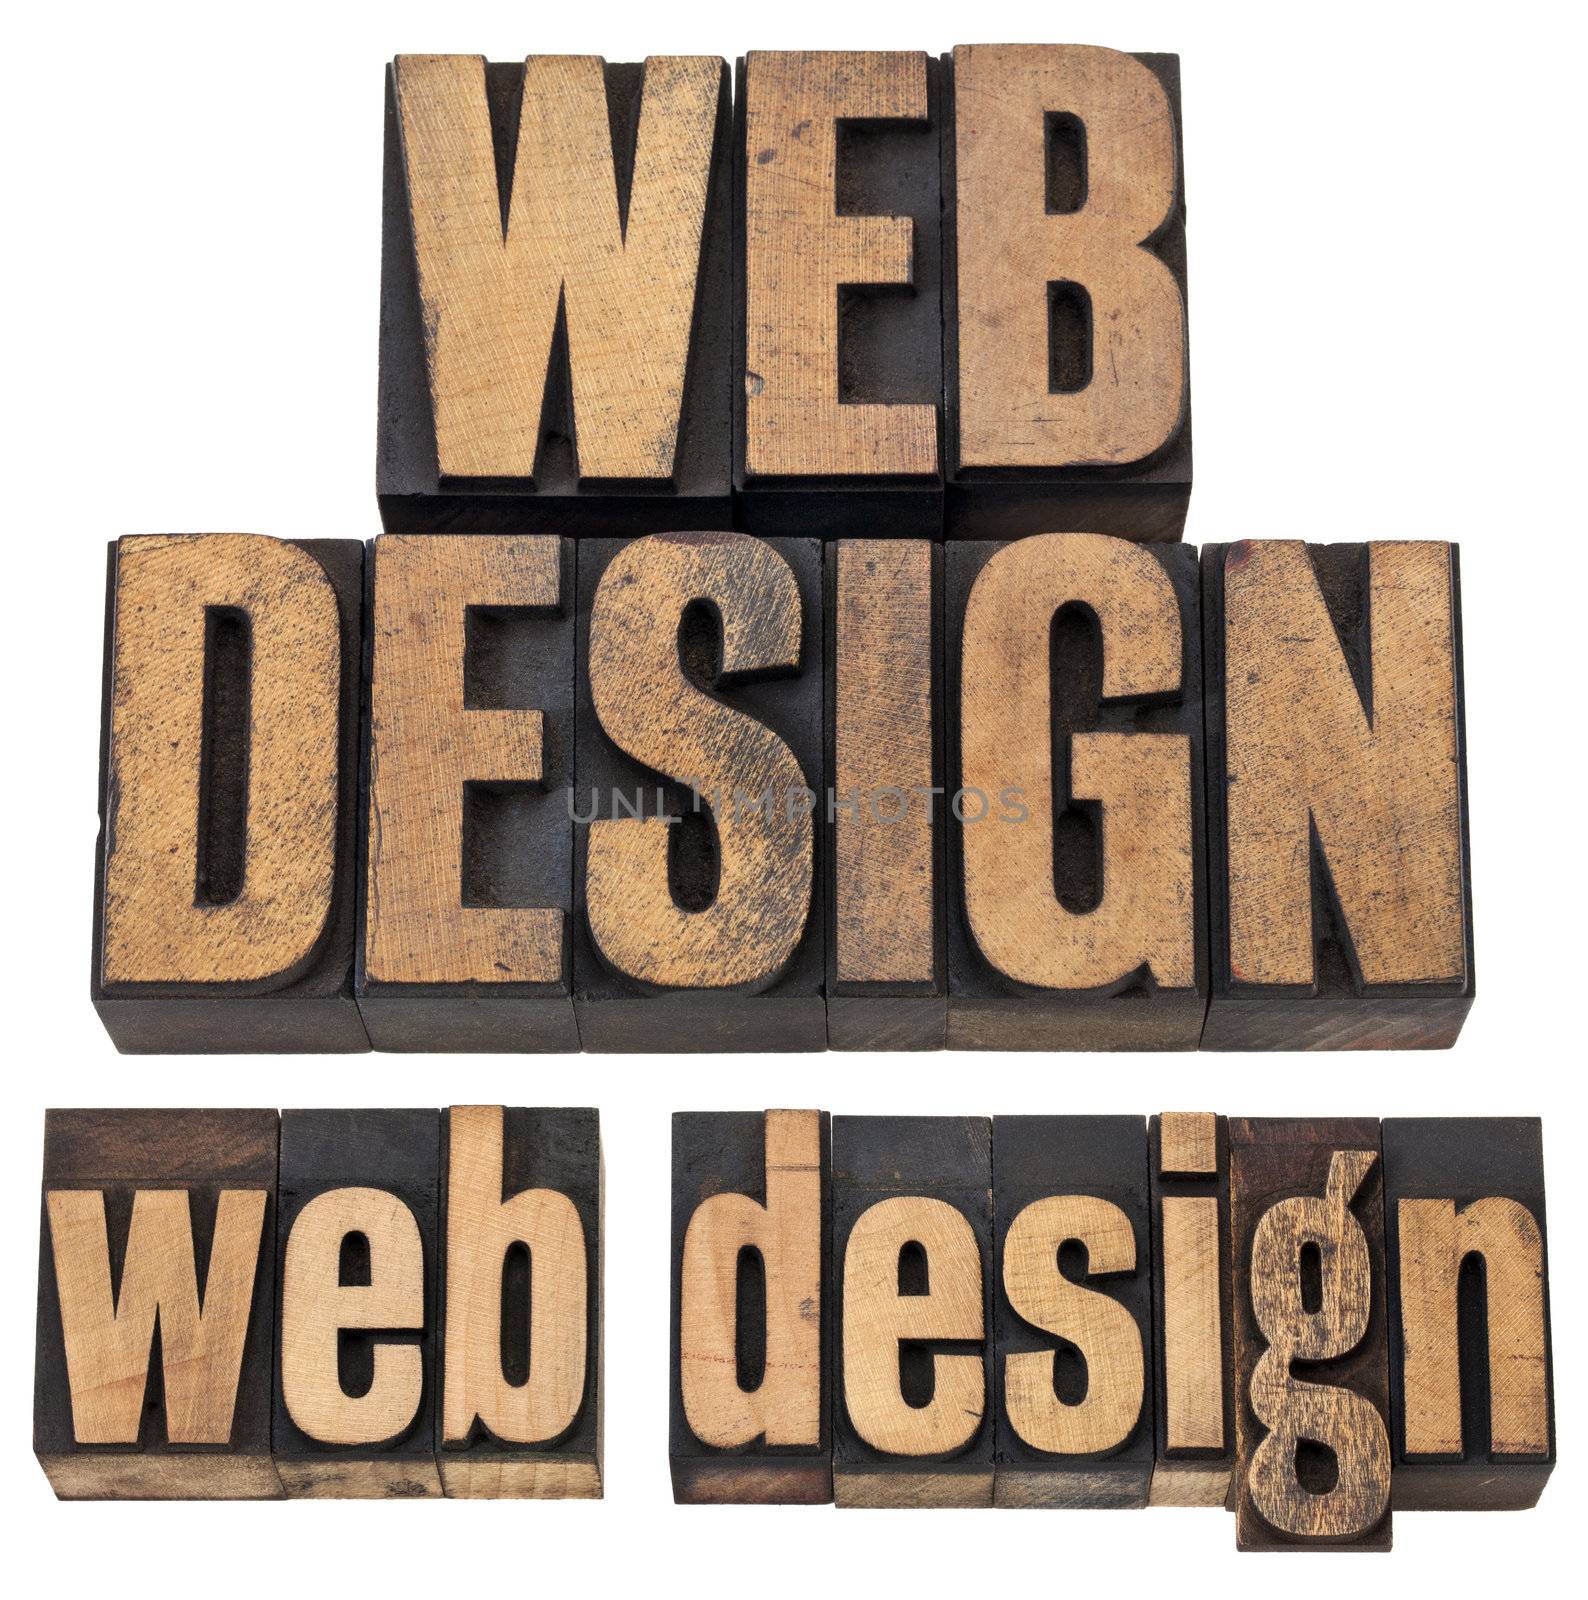 web design in letterpress type by PixelsAway